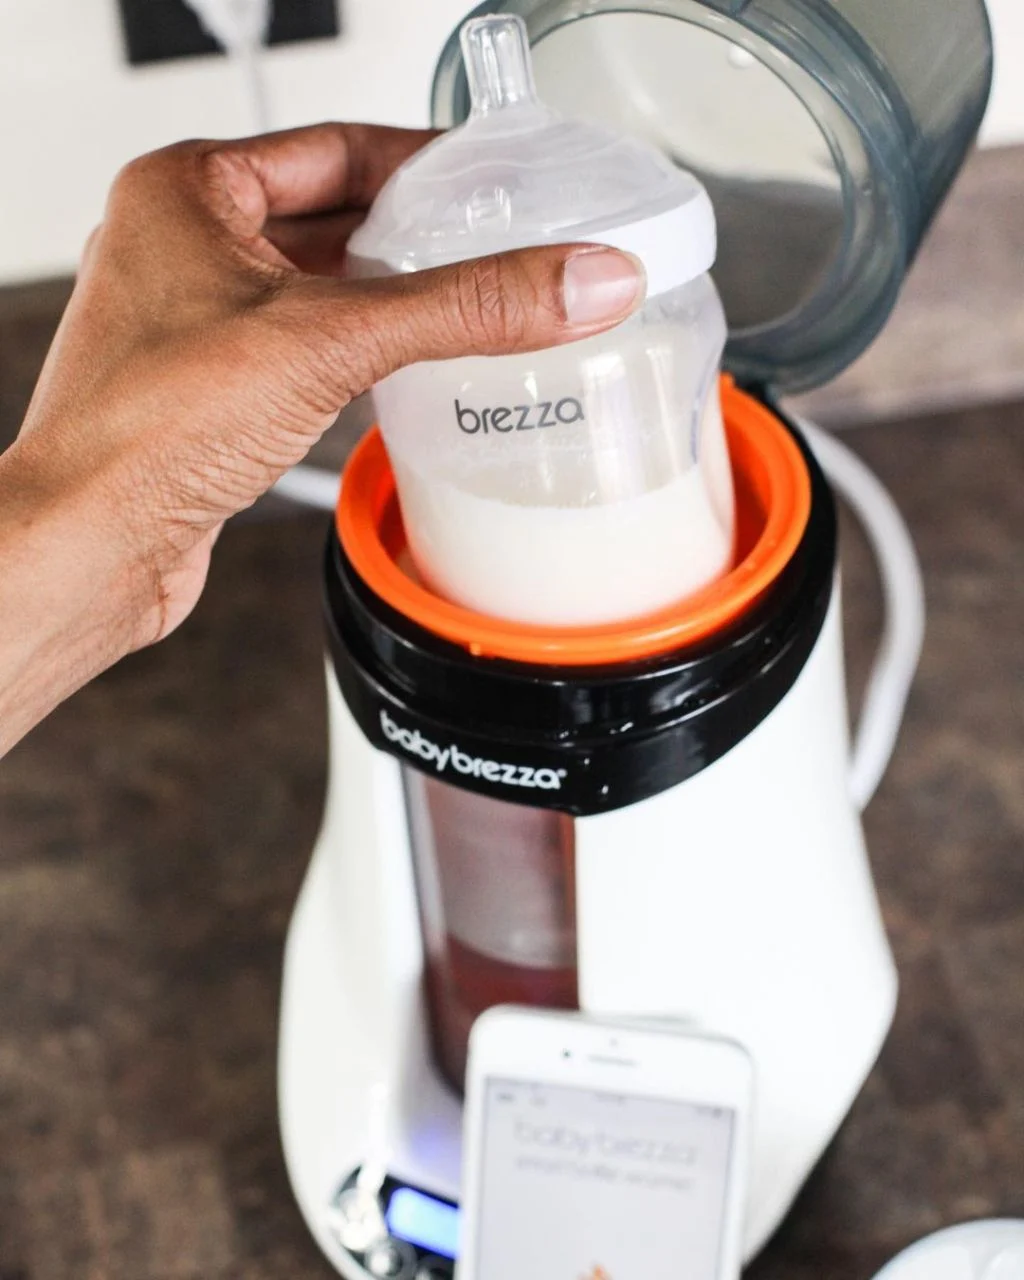 Baby Brezza Safe Smart Bottle Warmer Akıllı Güvenli Anne Sütü Isıtıcısı